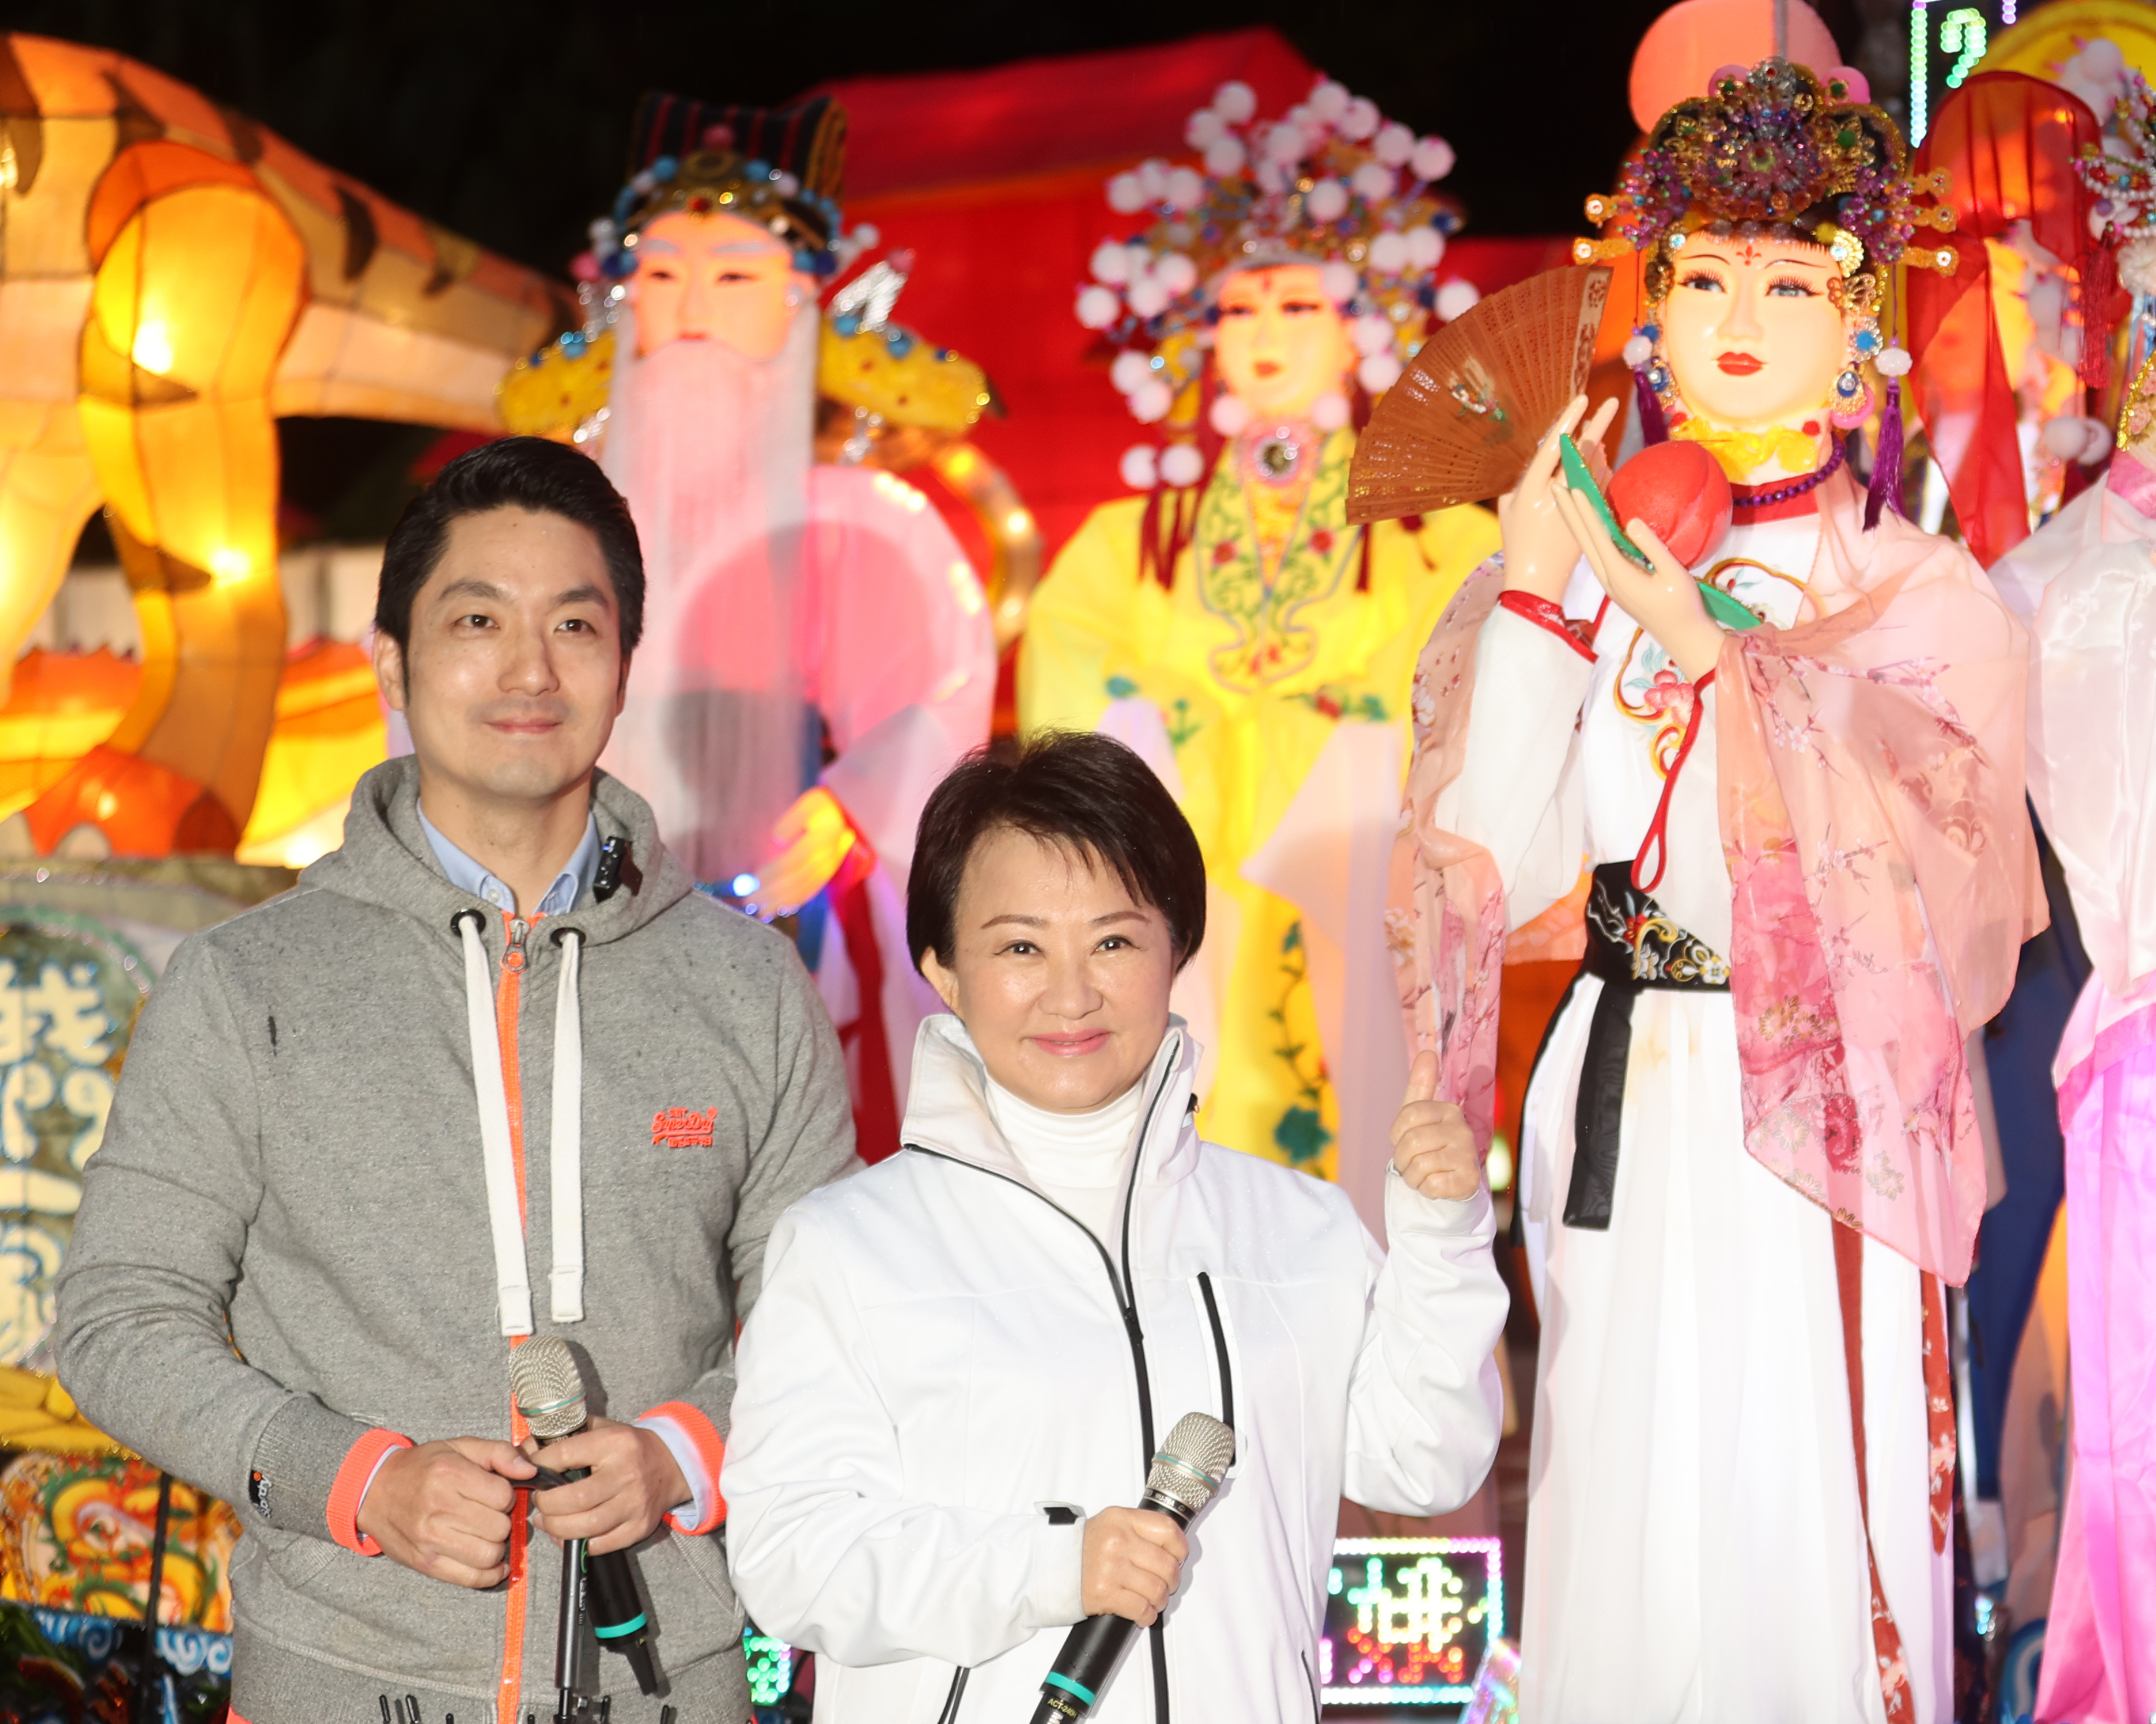 台中市长卢秀燕（右）和台北市长蒋万安（左）情同姐弟，两人在台北灯节时互称「女神、男神」，相当逗趣。本报系资料照片